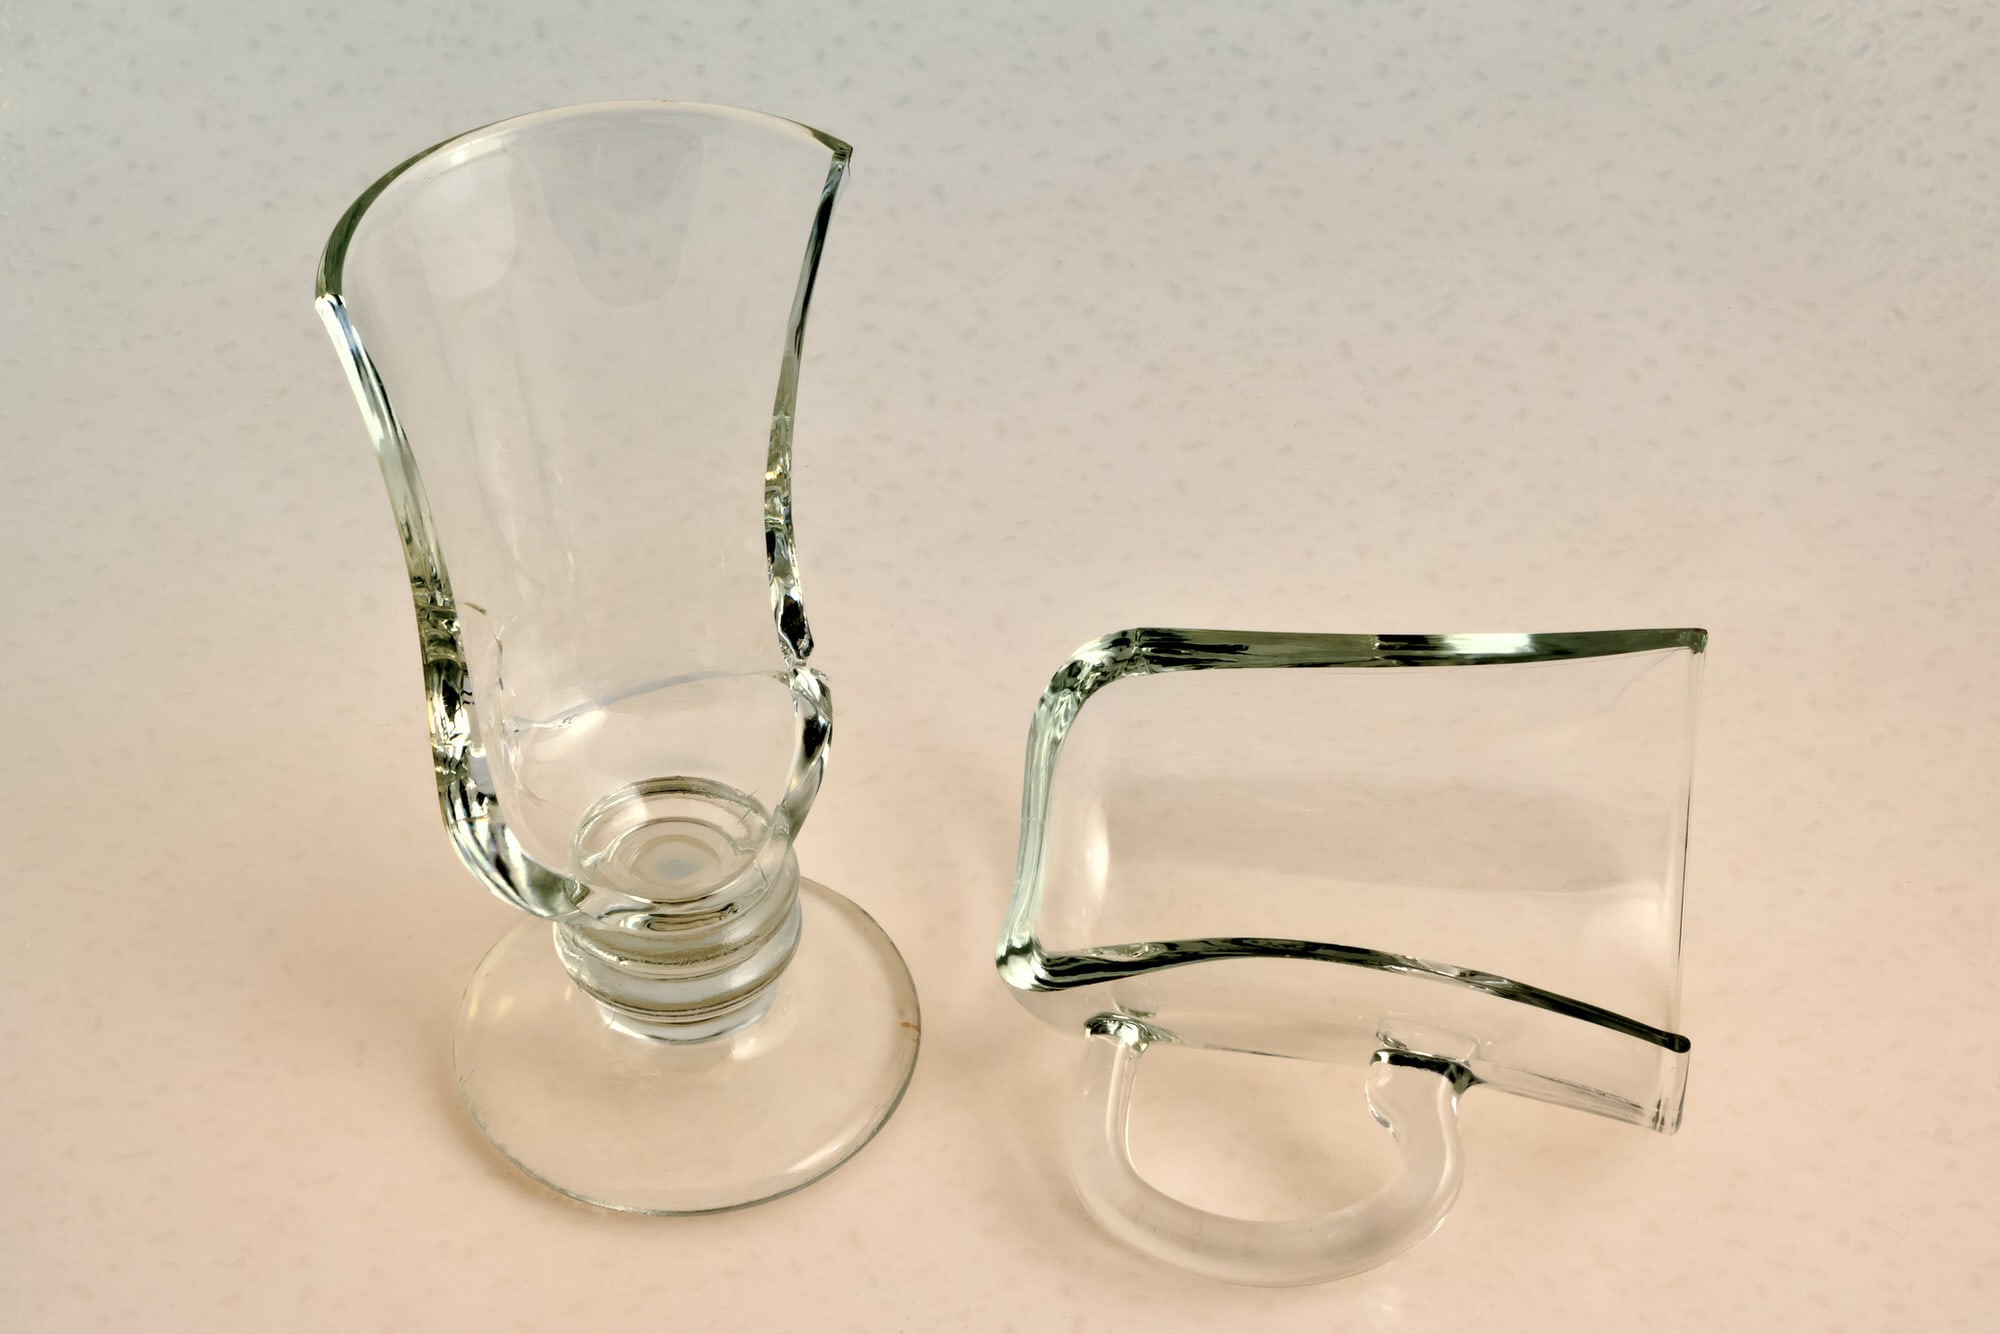 Glas-Reparatur - So wird es gemacht - HeimHelden®